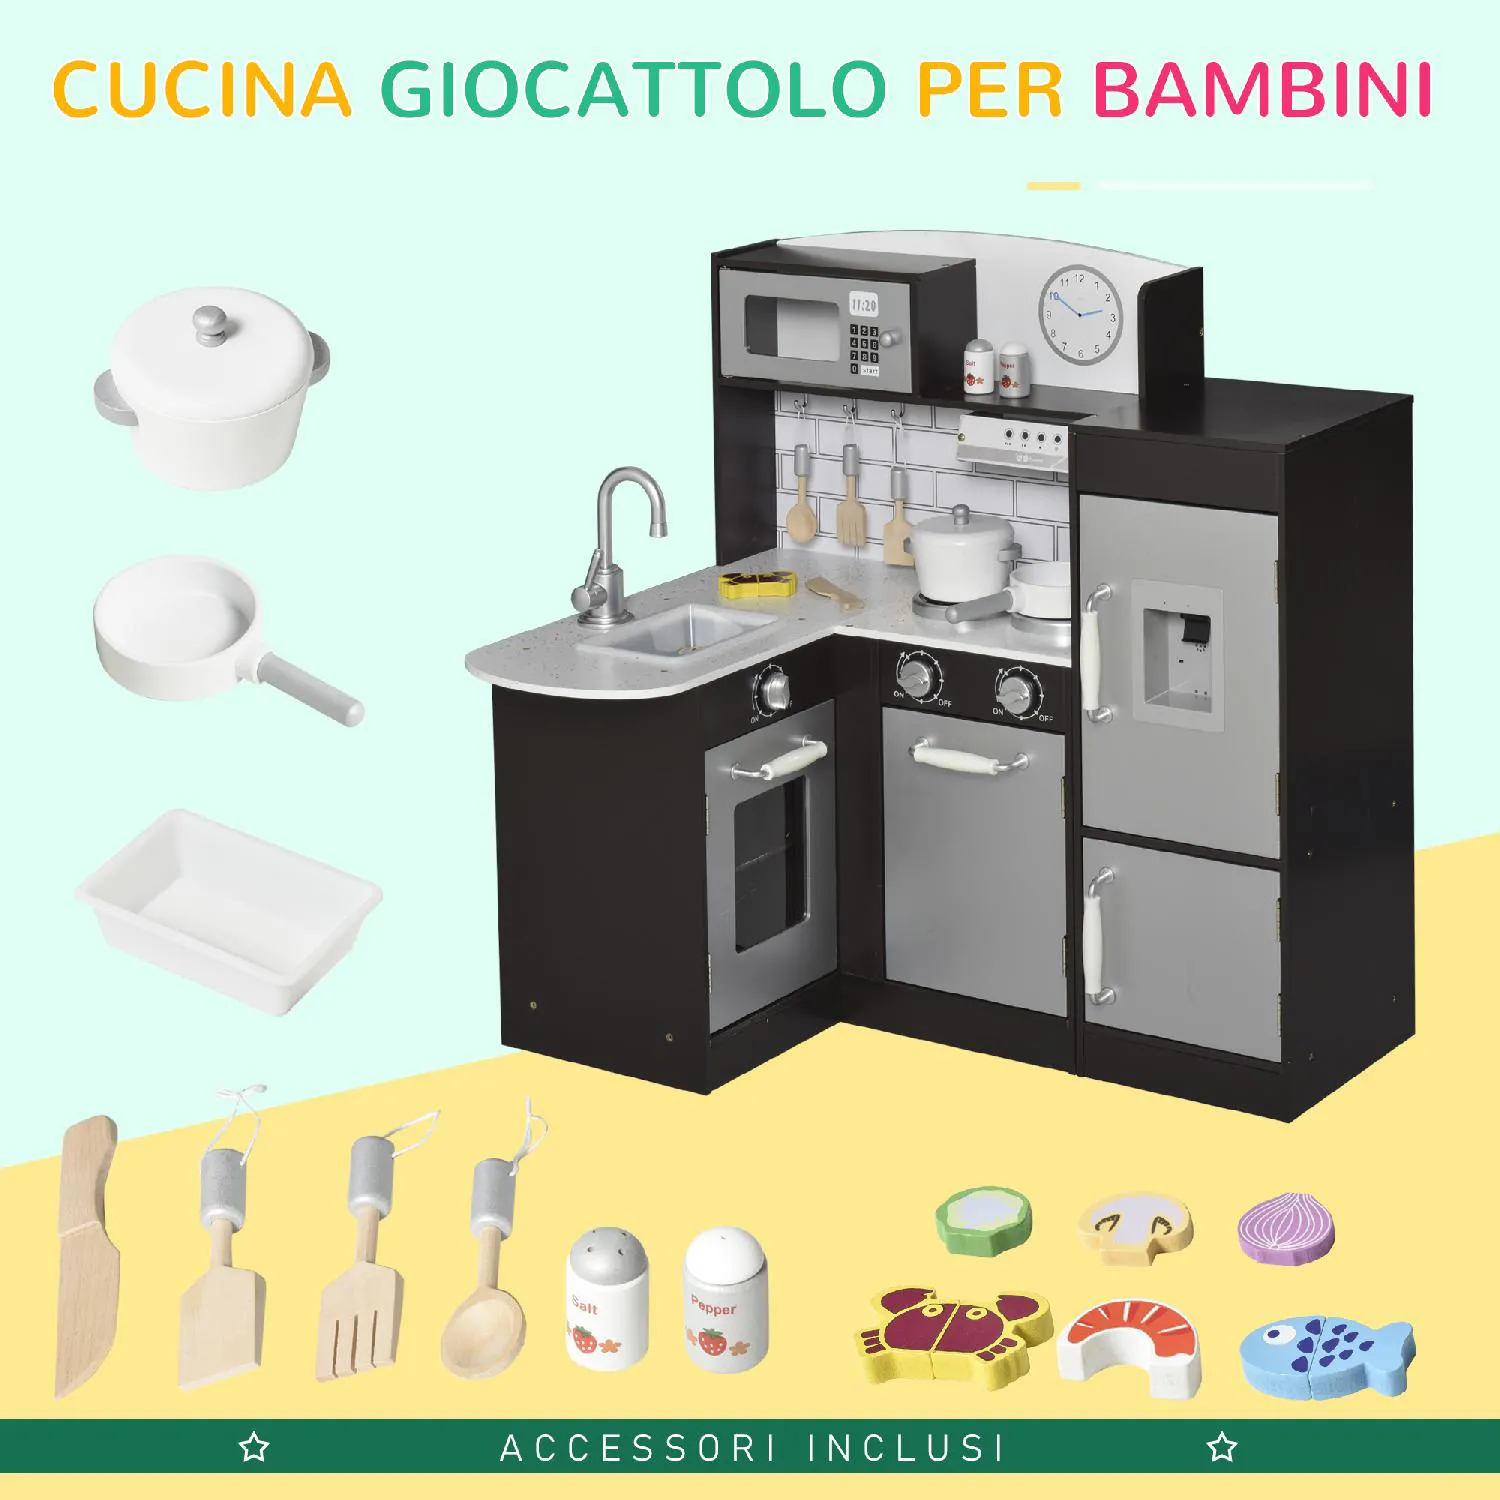 DecHome Cucina Giocattolo in Legno di Pino Playset per Bambini da 3+ Anni  colore Nero - 079/350